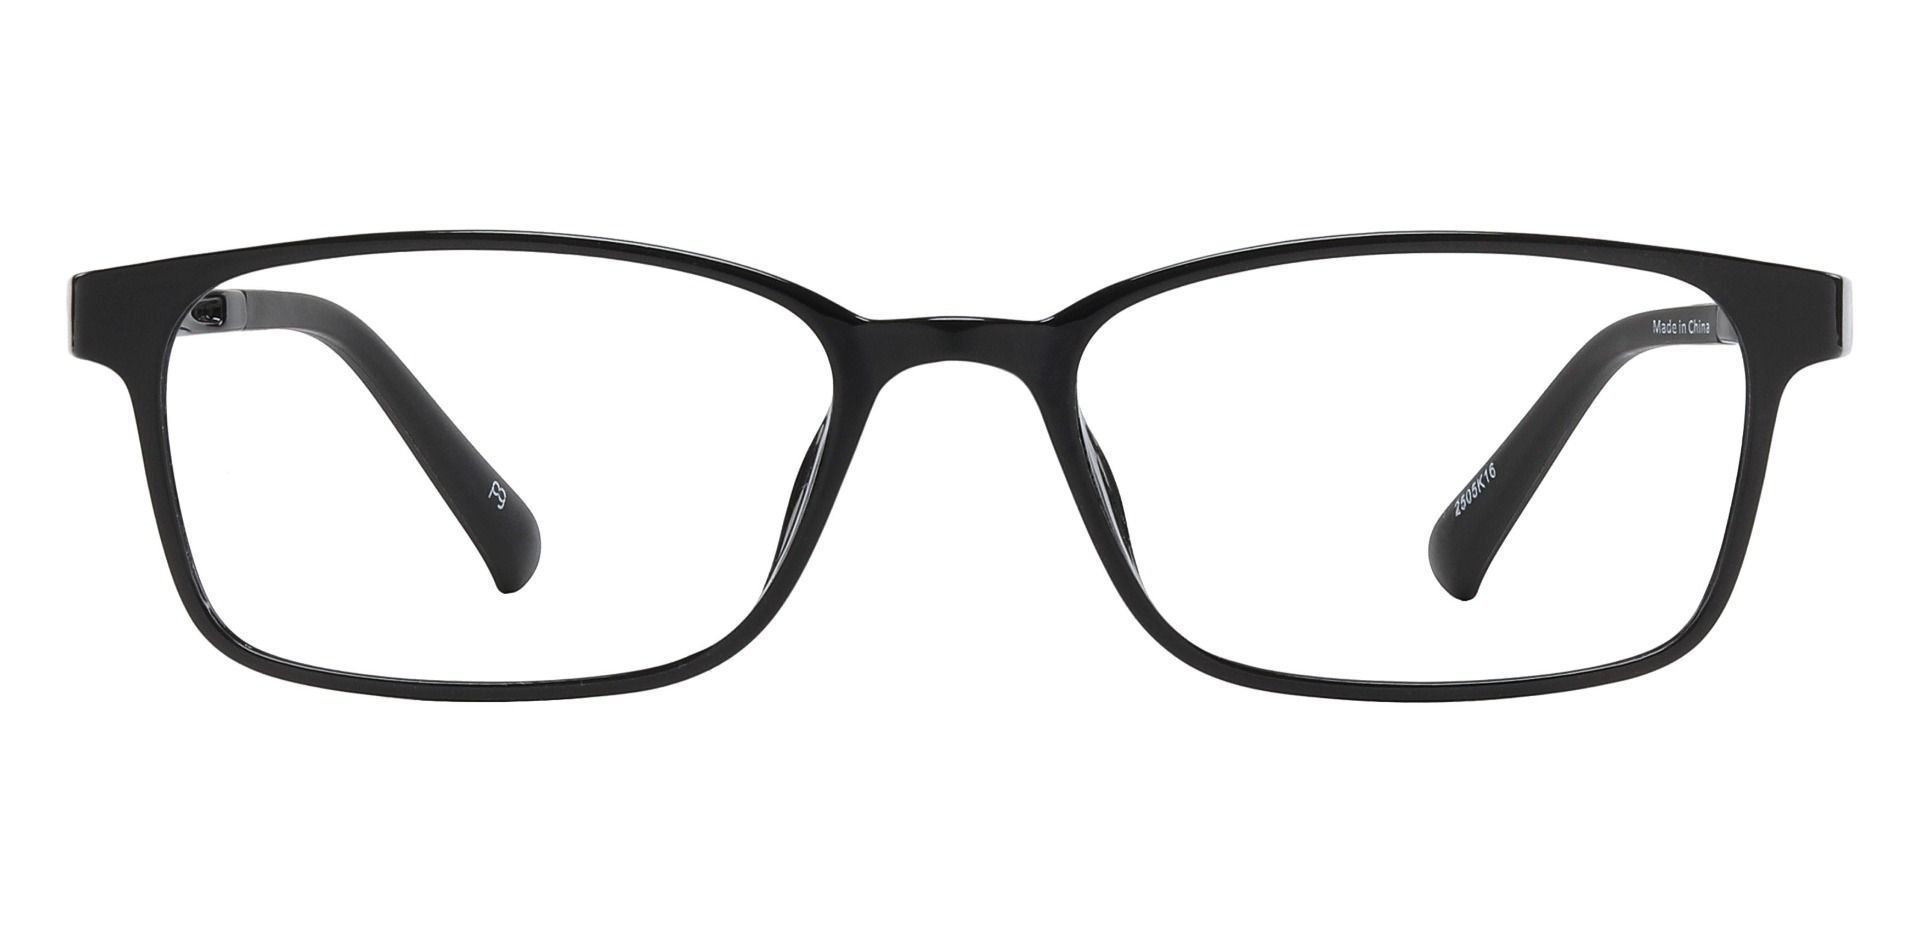 Holmen Rectangle Blue Light Blocking Glasses - Black | Men's Eyeglasses ...